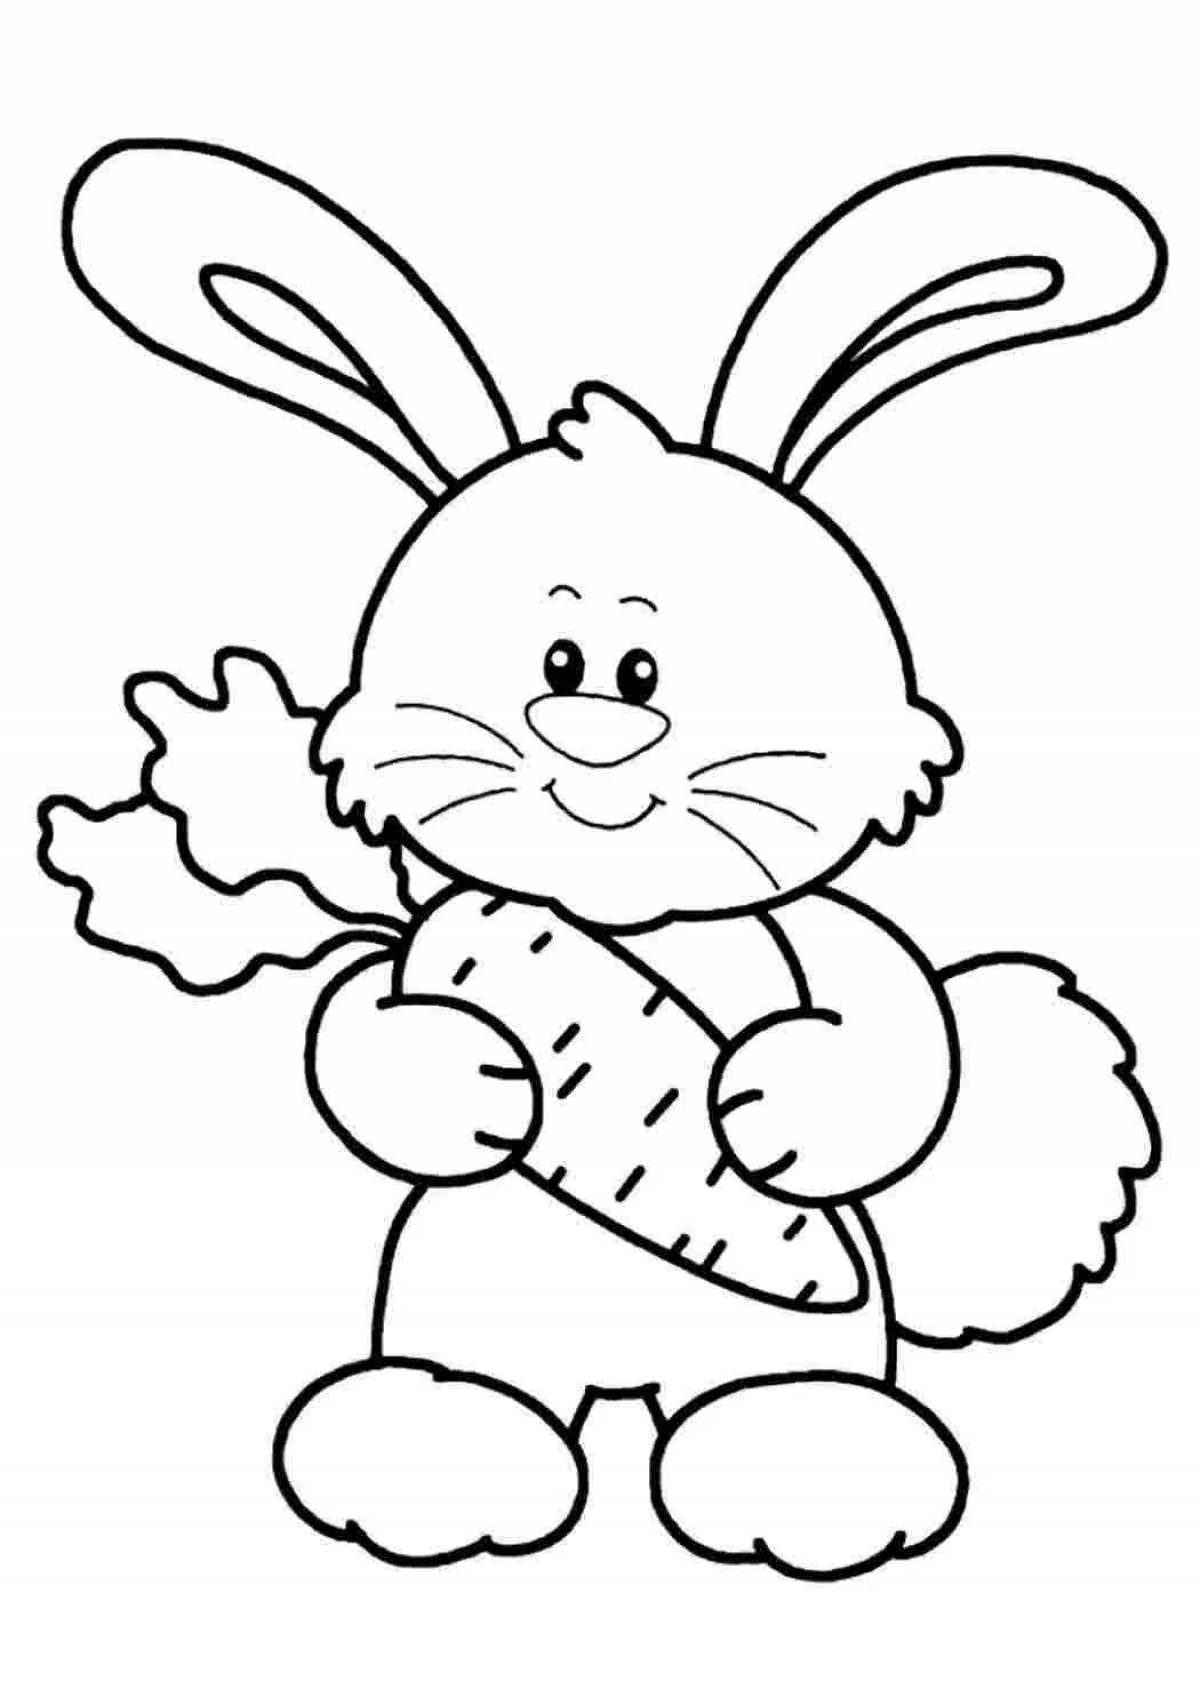 Причудливая раскраска страницы с кроликом